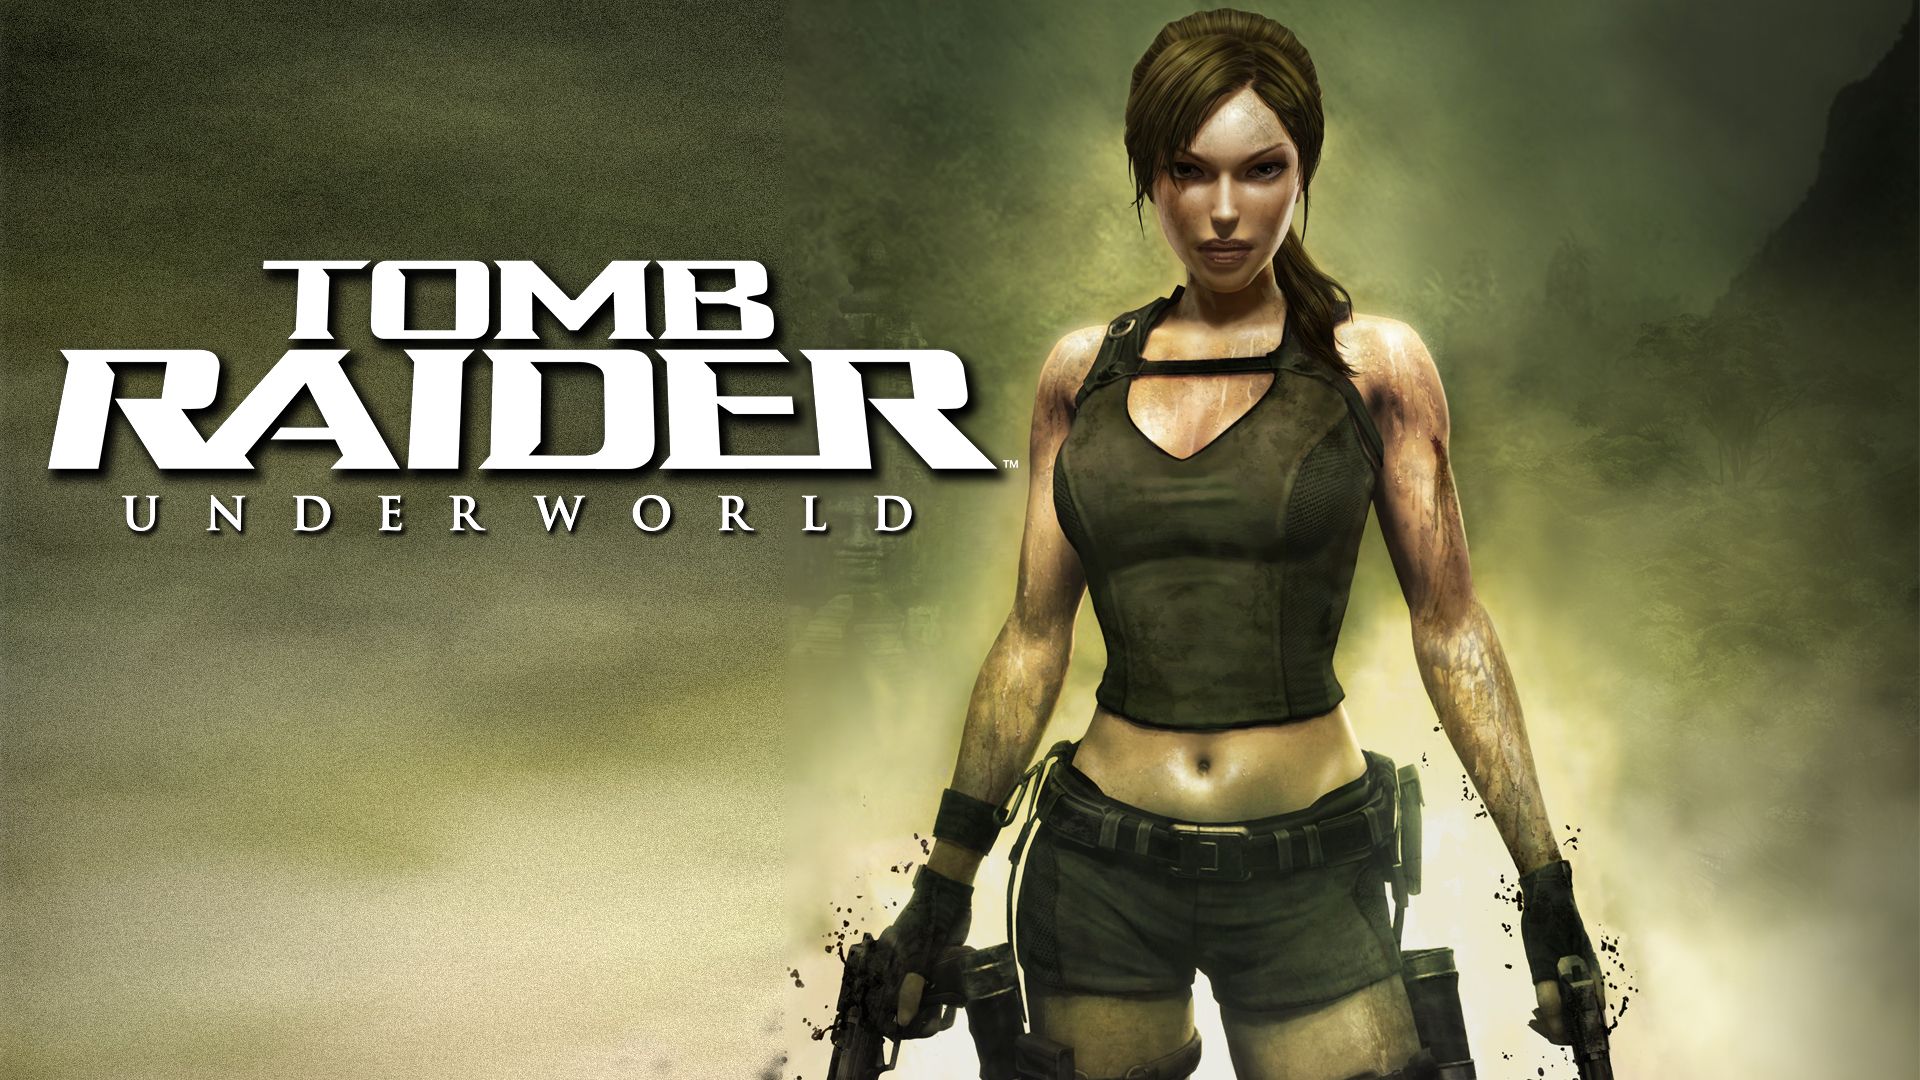 Прохождение игры Tomb Raider: Underworld # 8. HD - Full 1080p. (Русская версия игры)